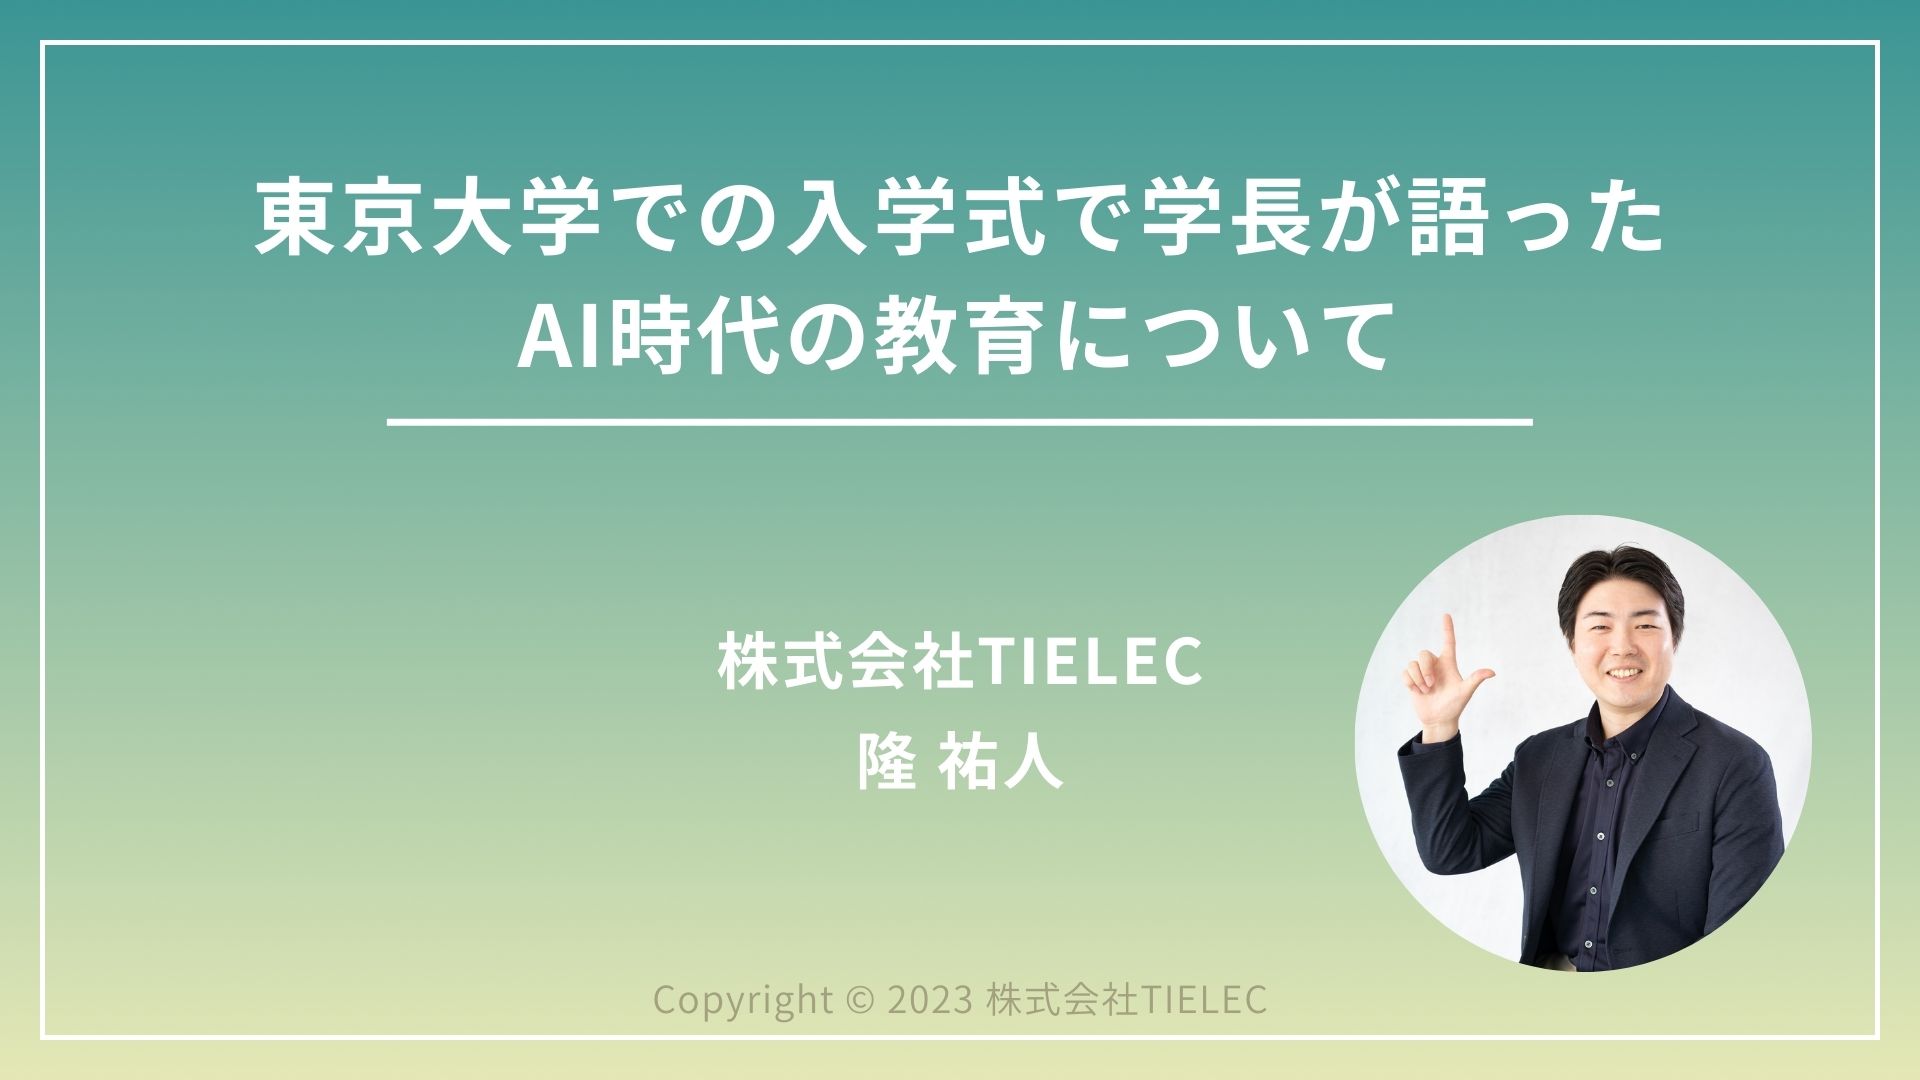 東京大学での入学式で学長が語ったAI時代の教育について - TIELEC Blog